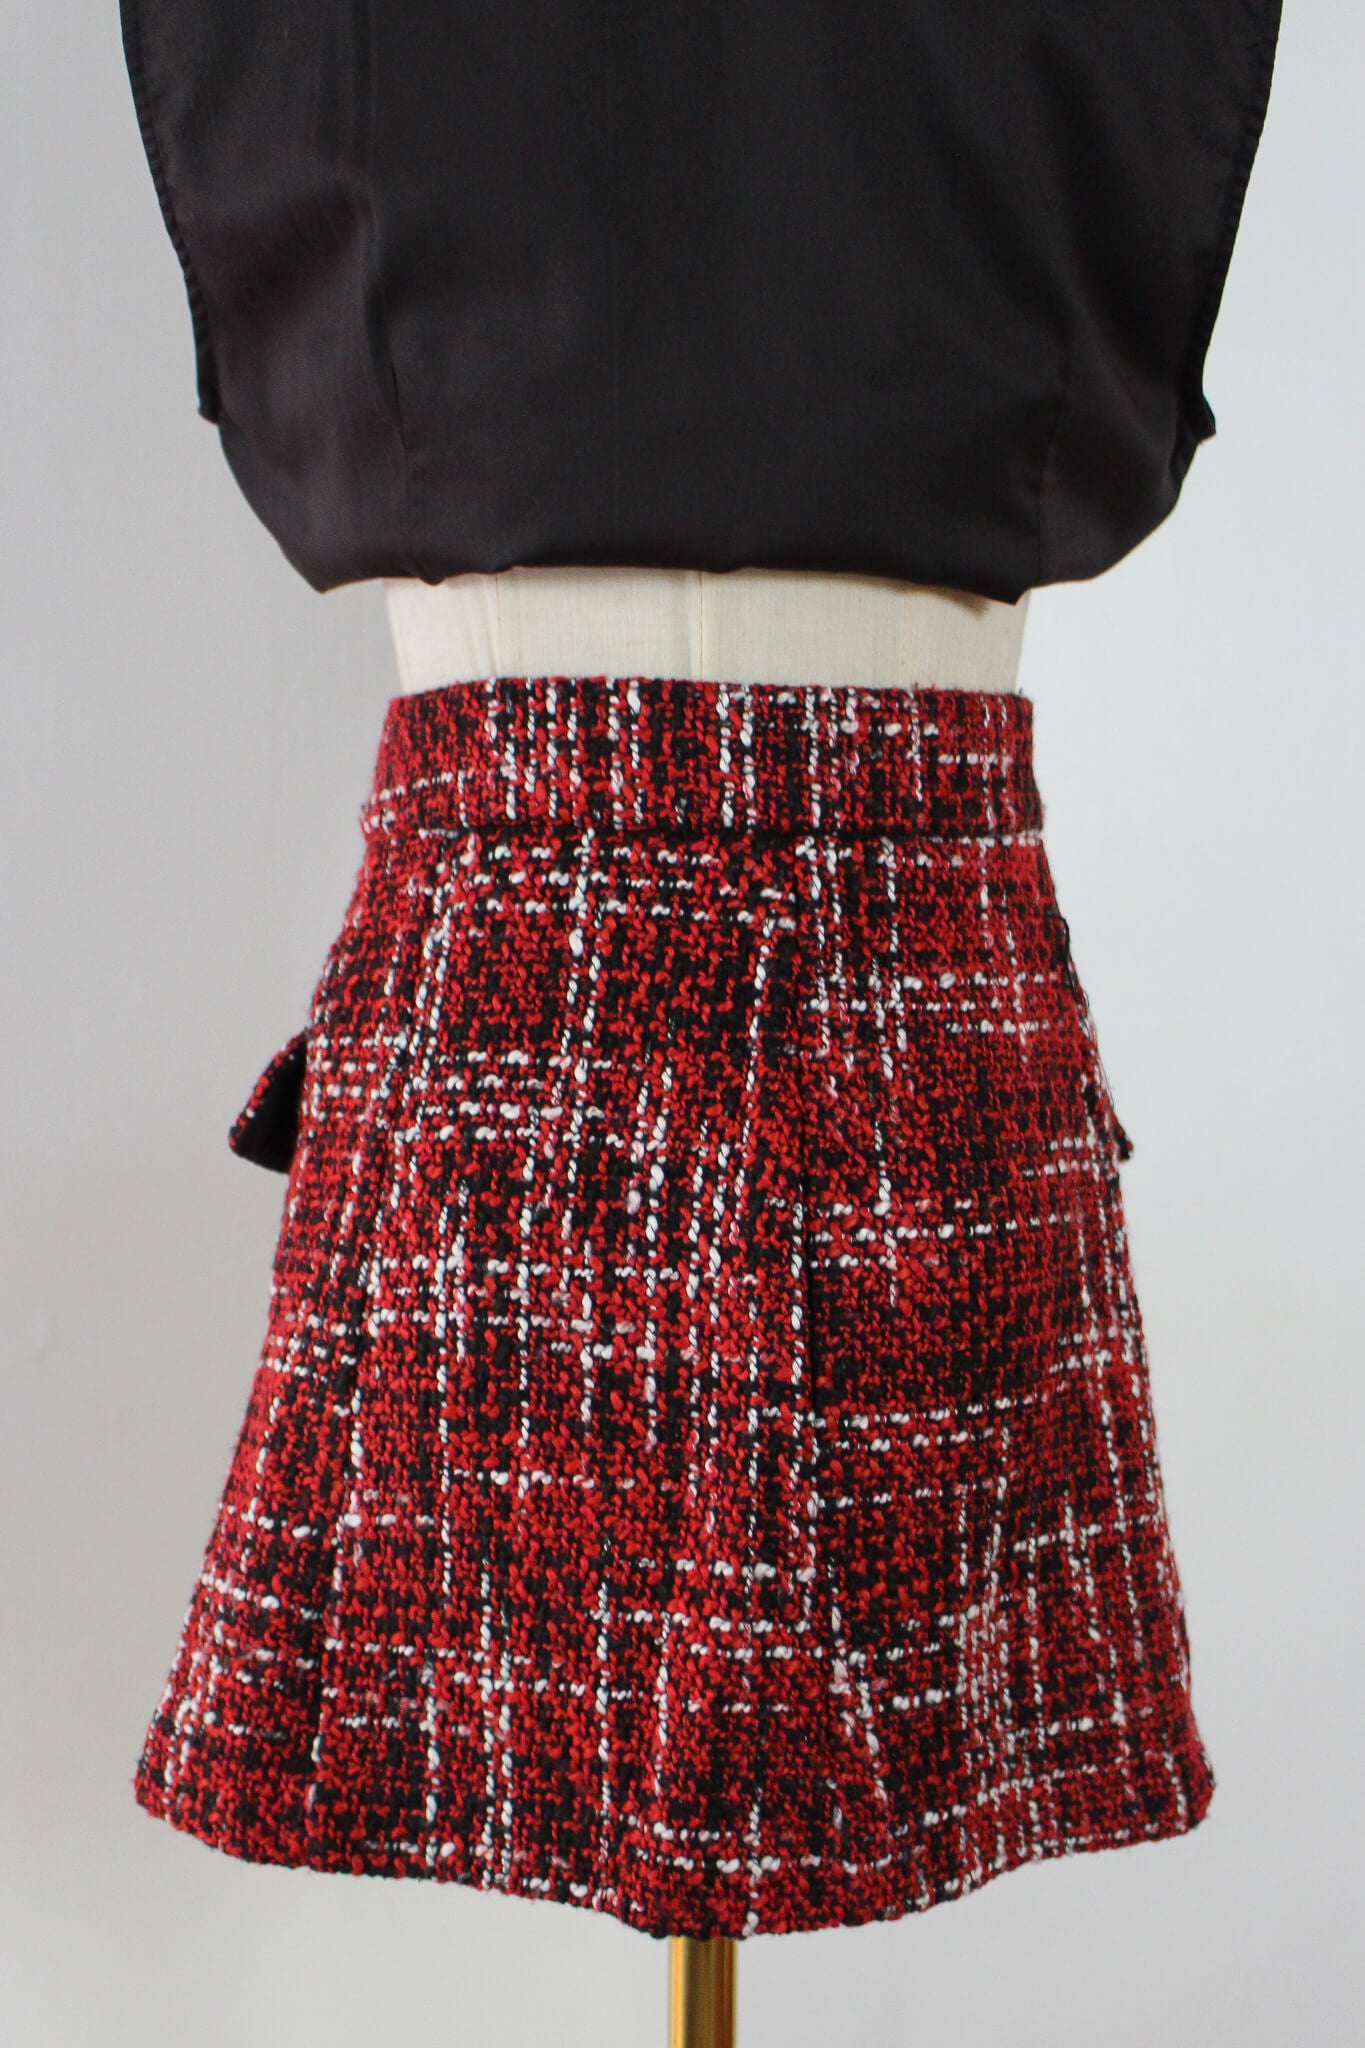 tartan pattern skirt with gold buttons